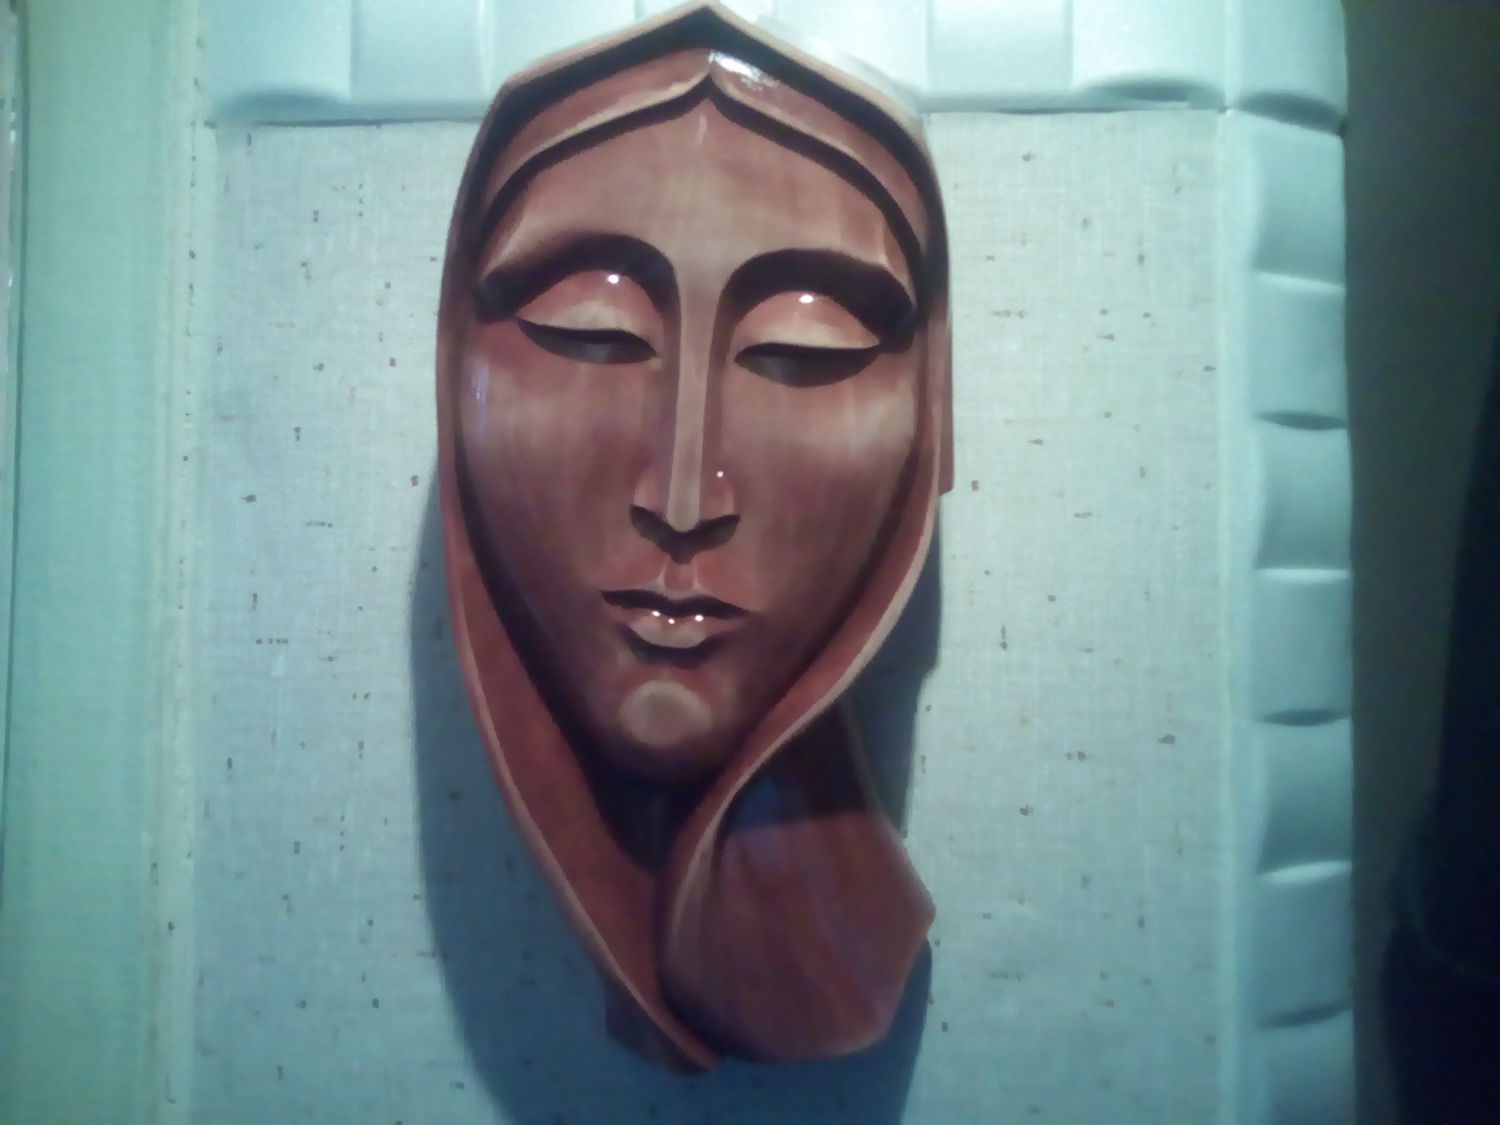 Эскизы деревянных масок